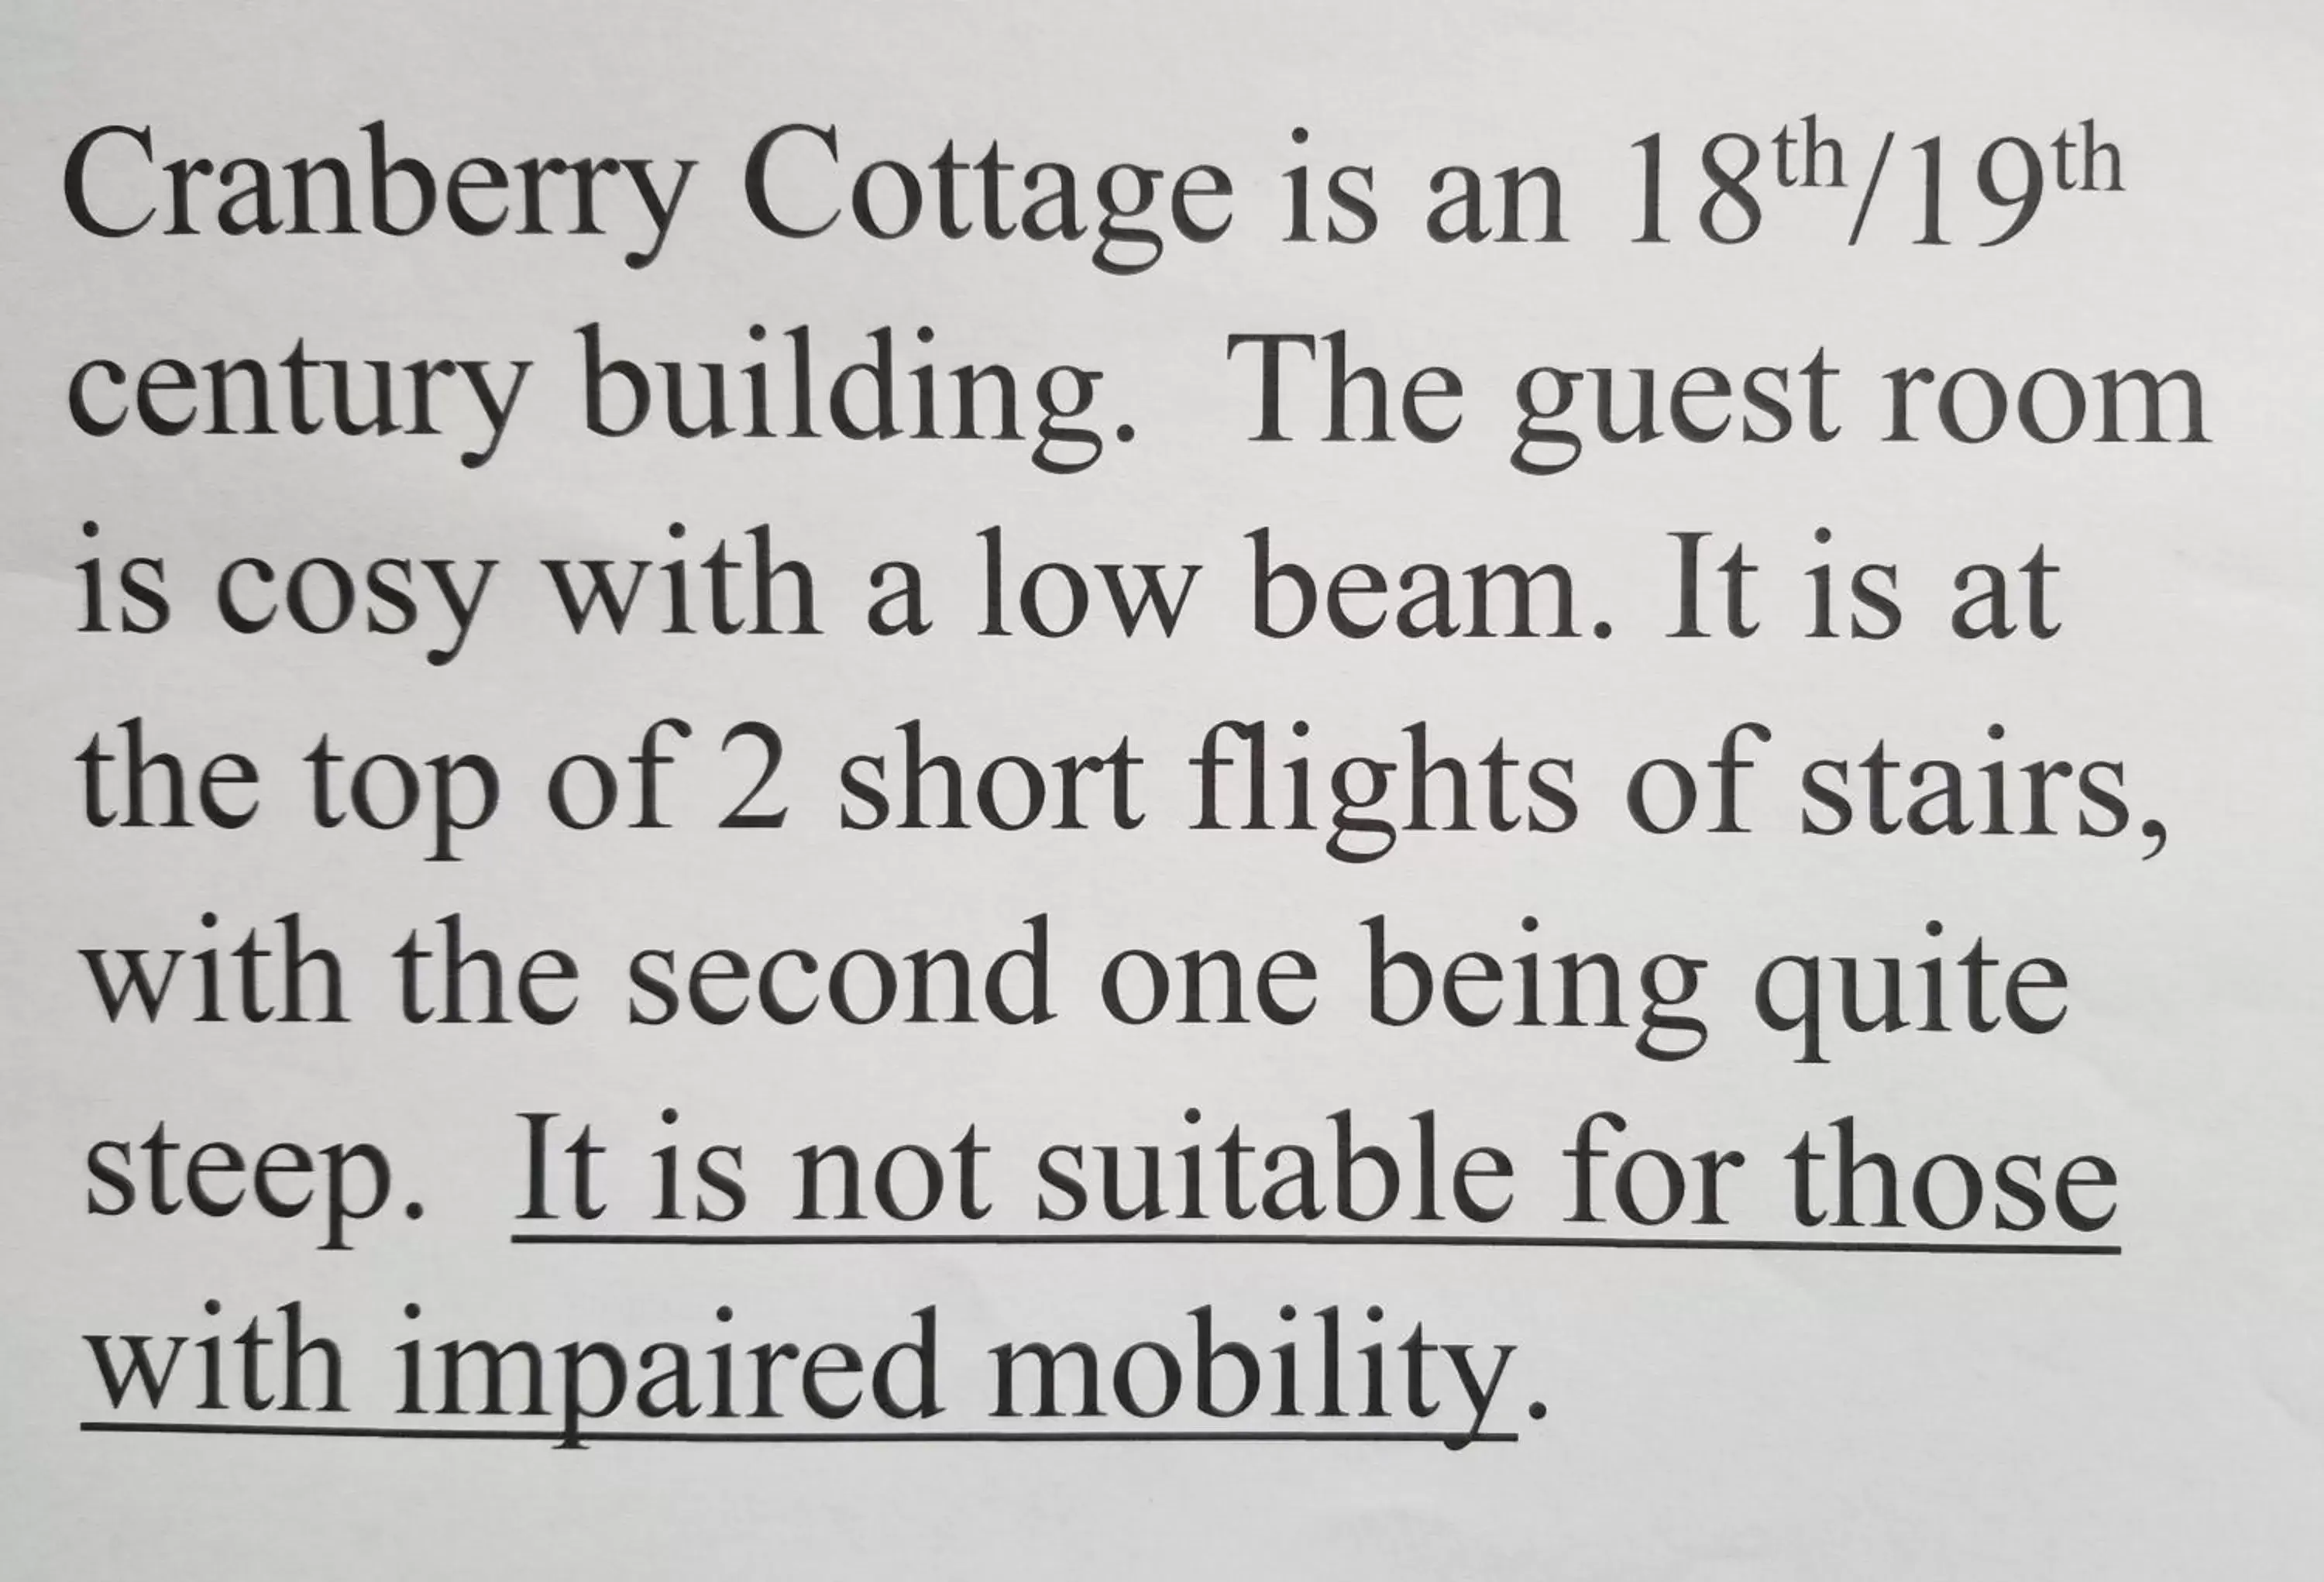 Cranberry Cottage